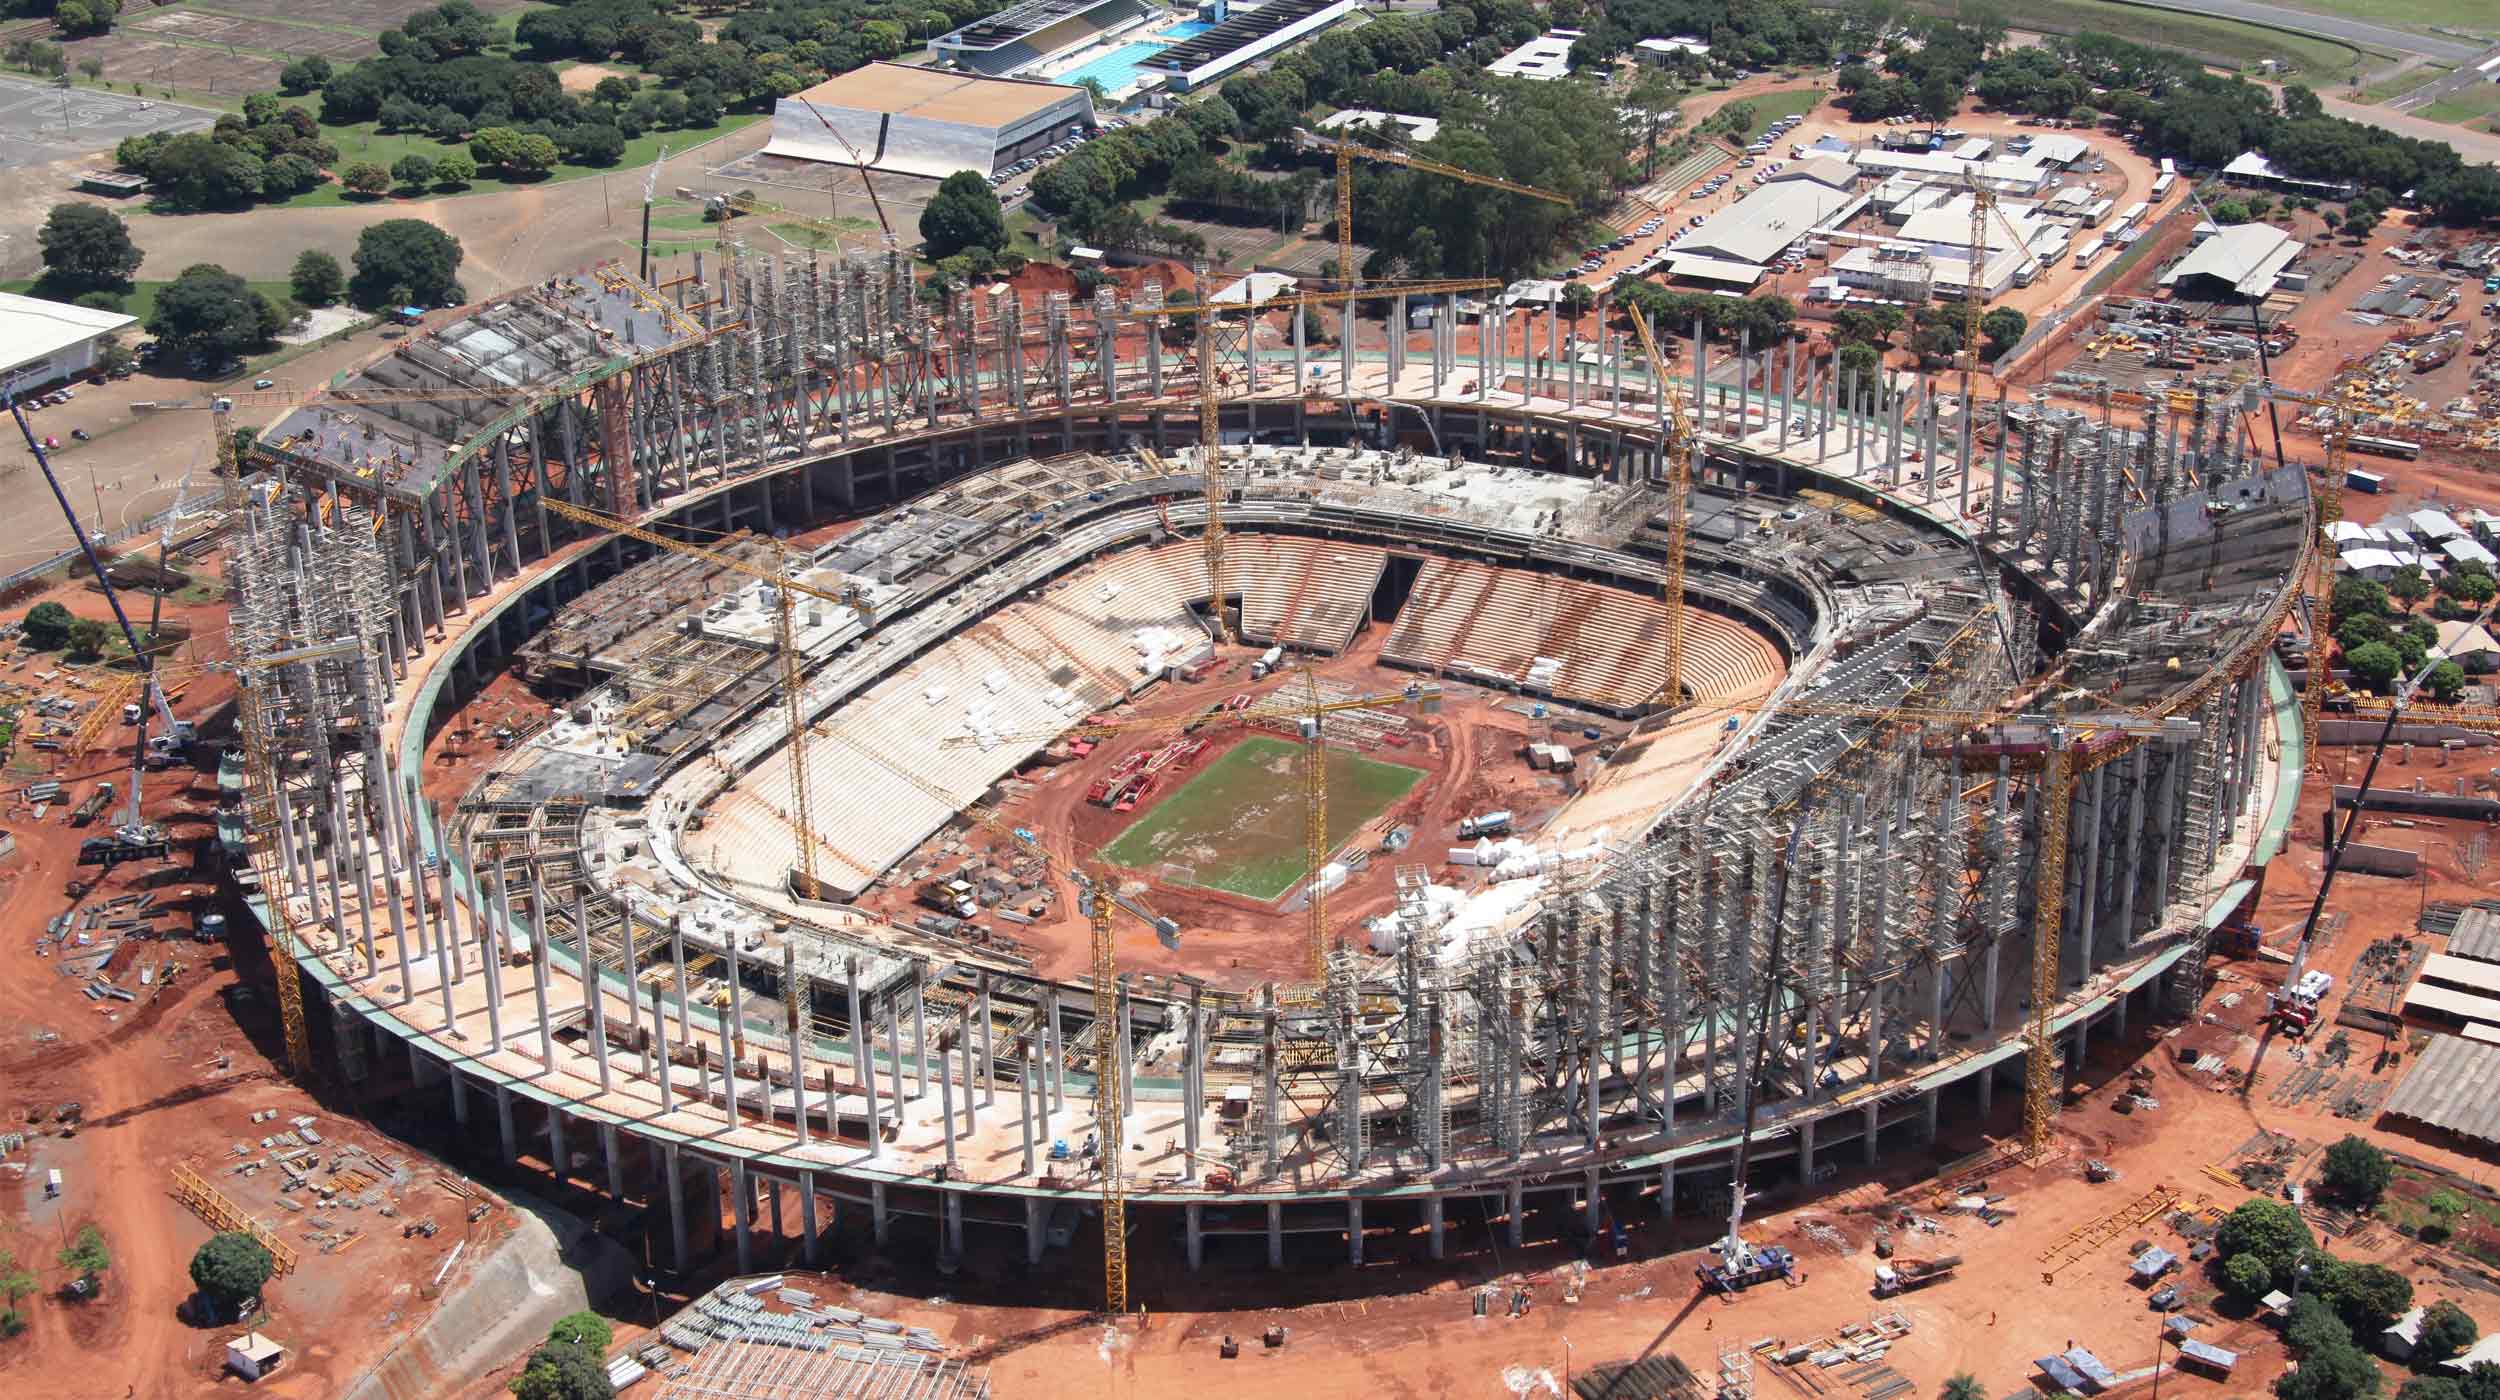 Ce stade plus connu sous le nom de Mané Garrincha sera l’un des principaux stades qui accueillera la Coupe du Monde de football de 2014.